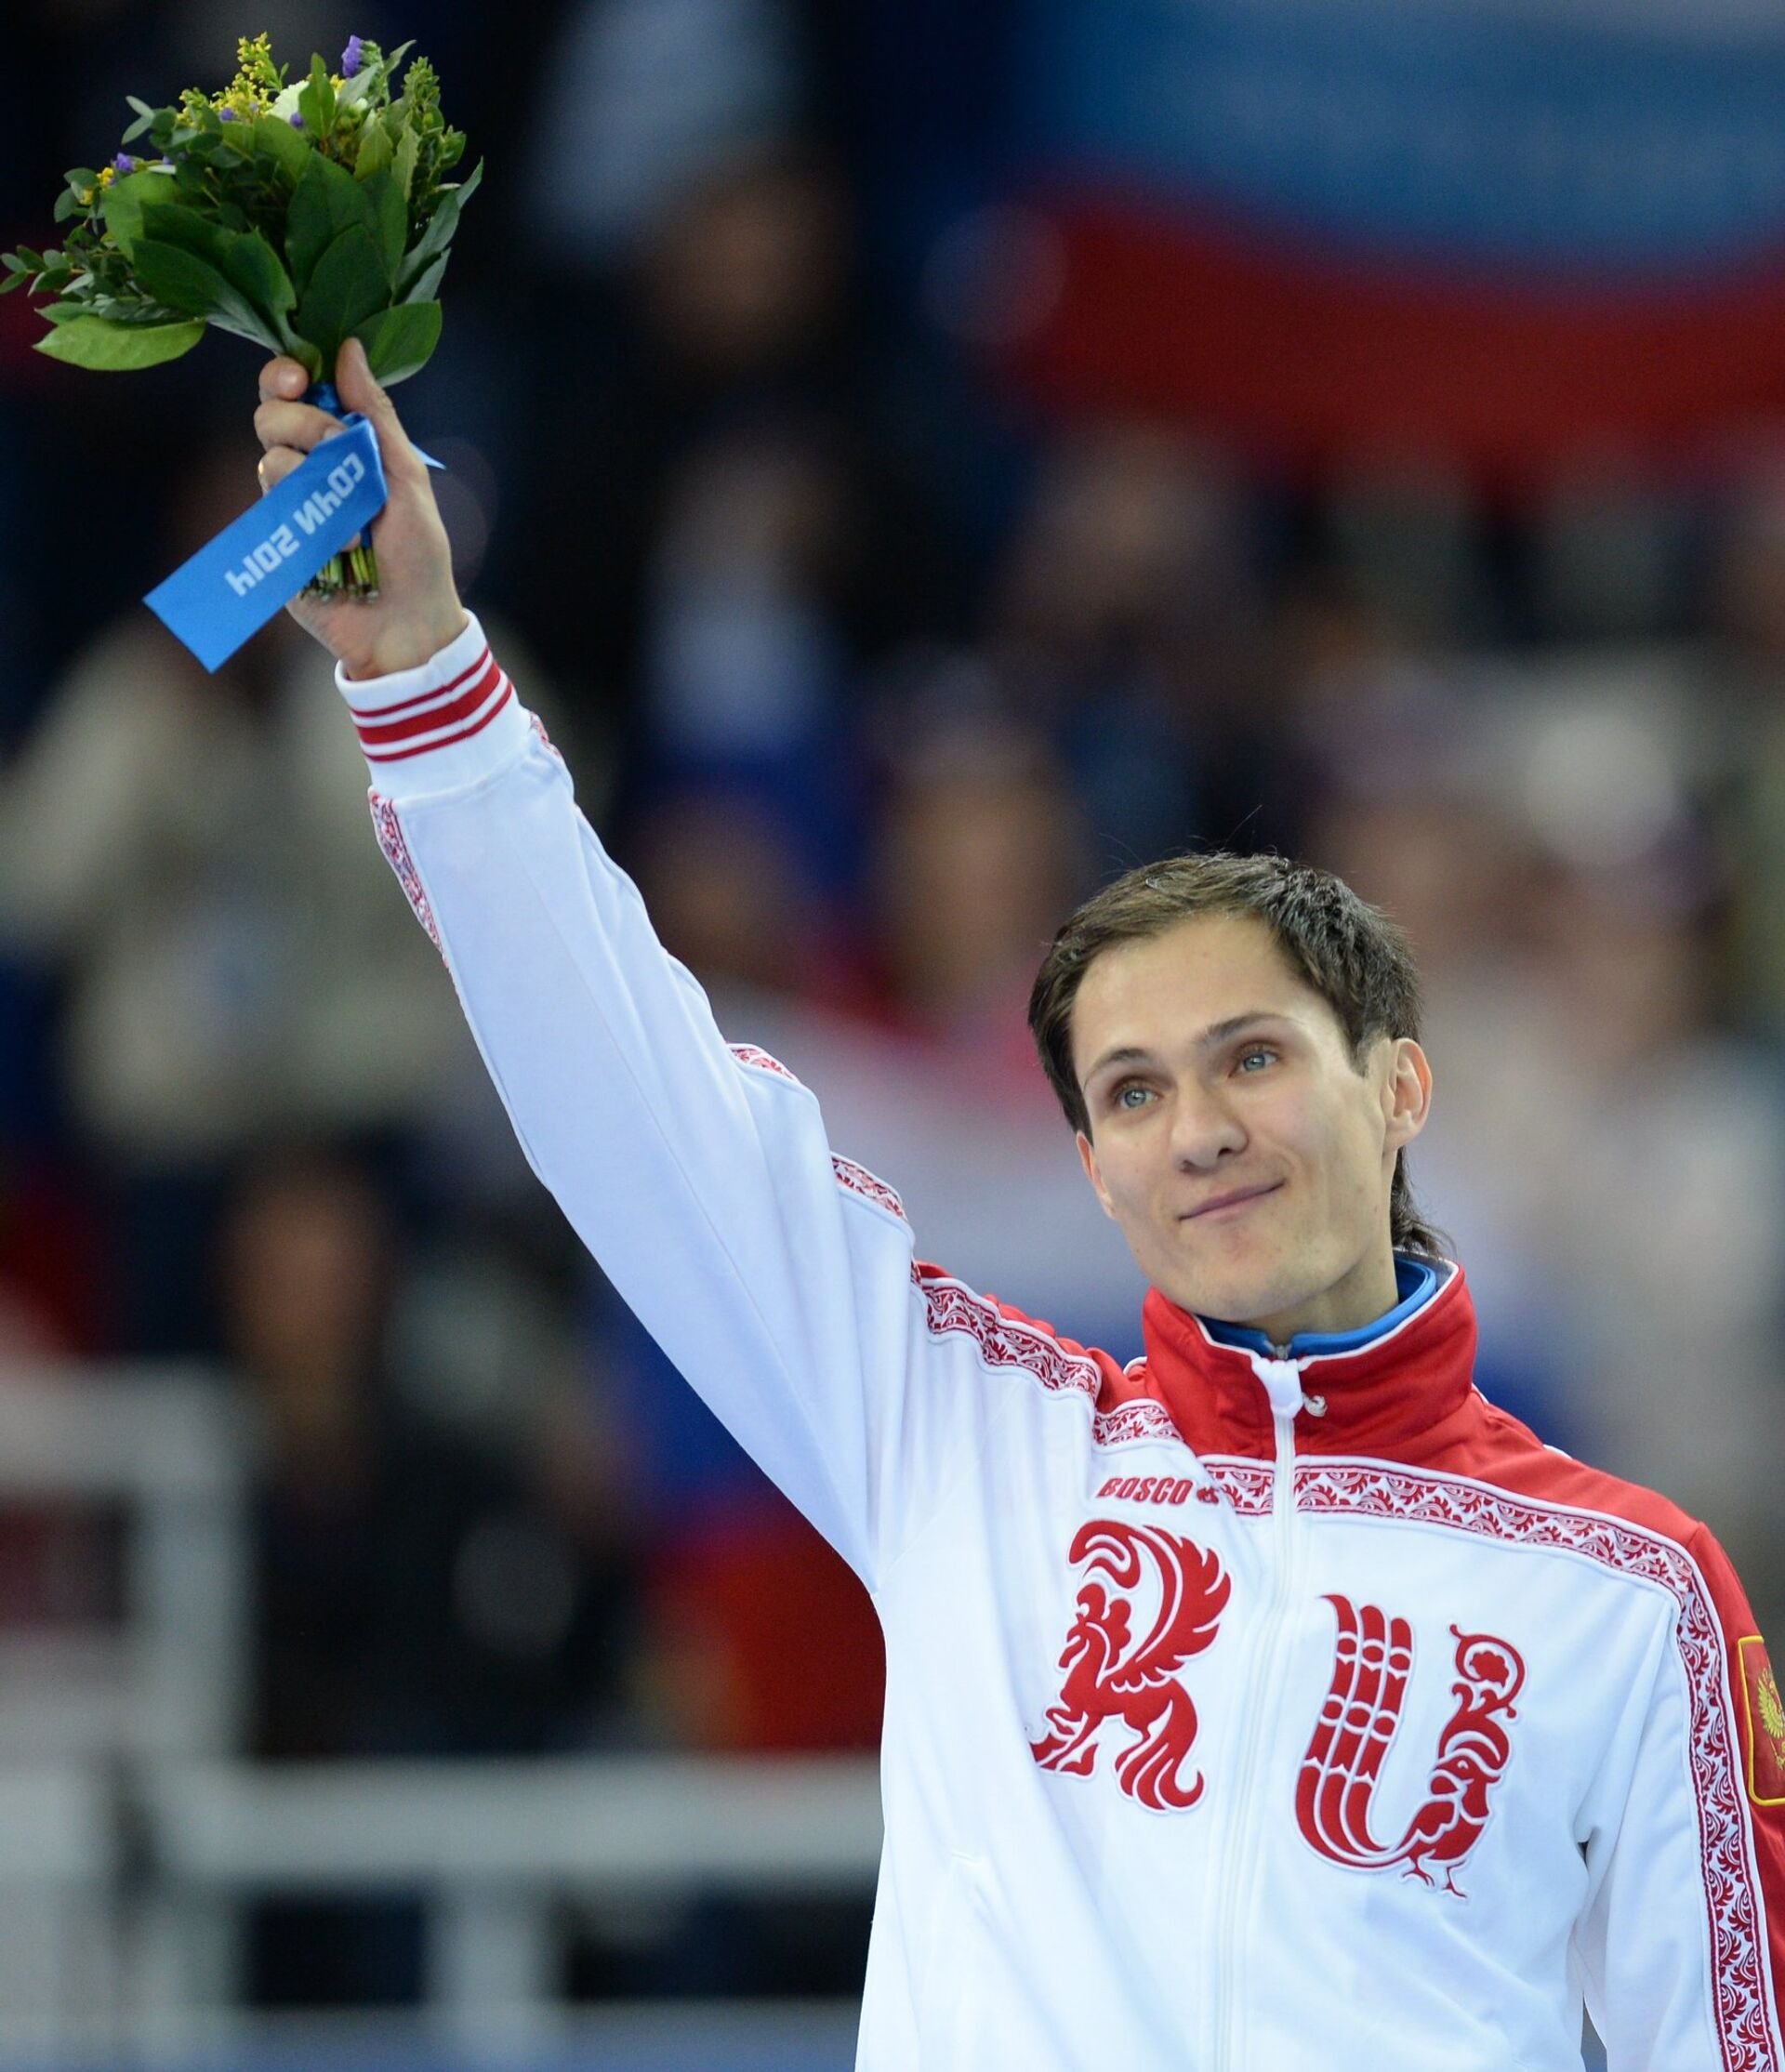 Олимпийские чемпионы россии мужчины